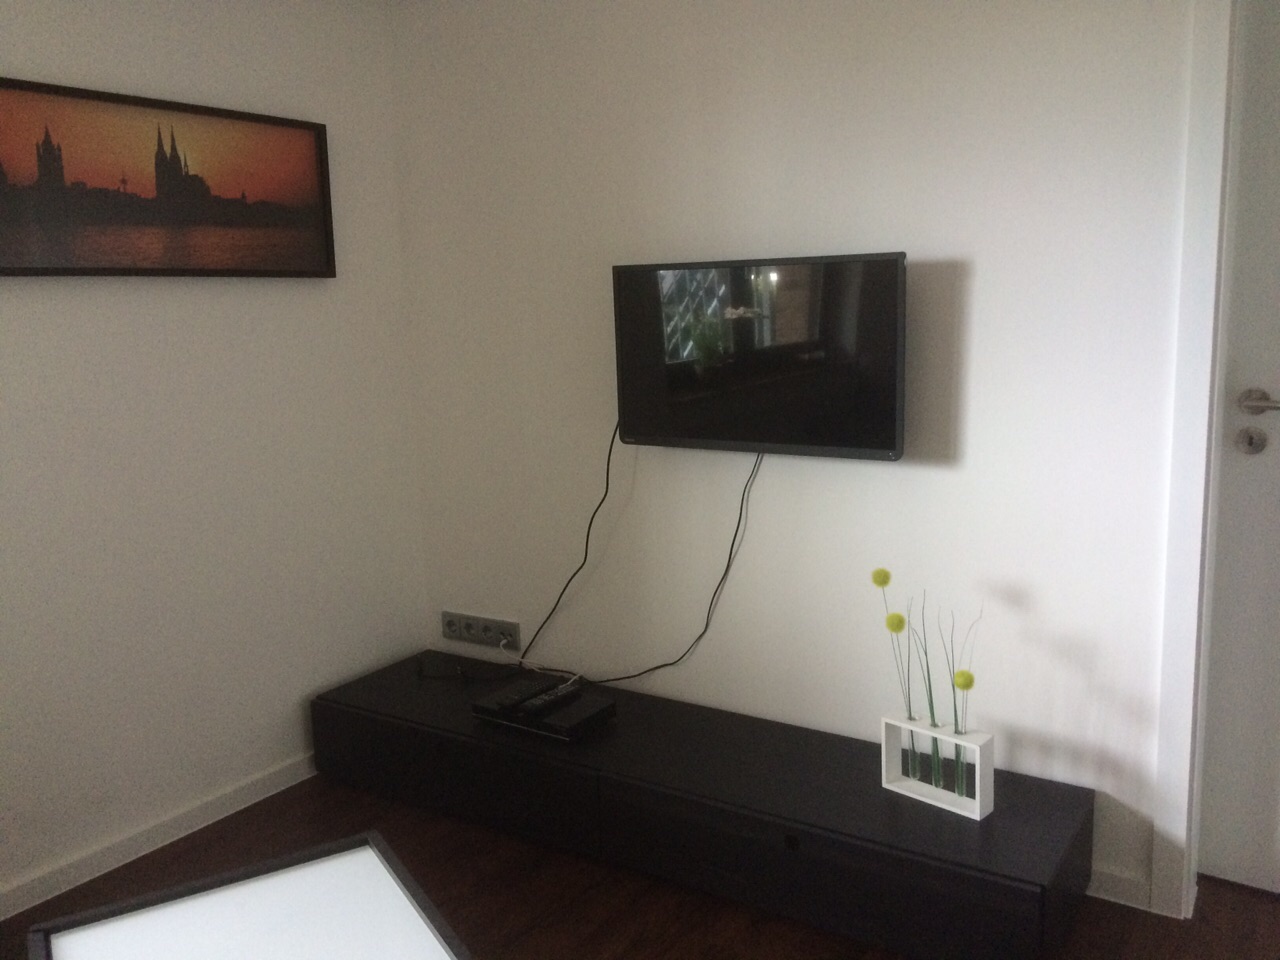 Wohnbereich mit TV